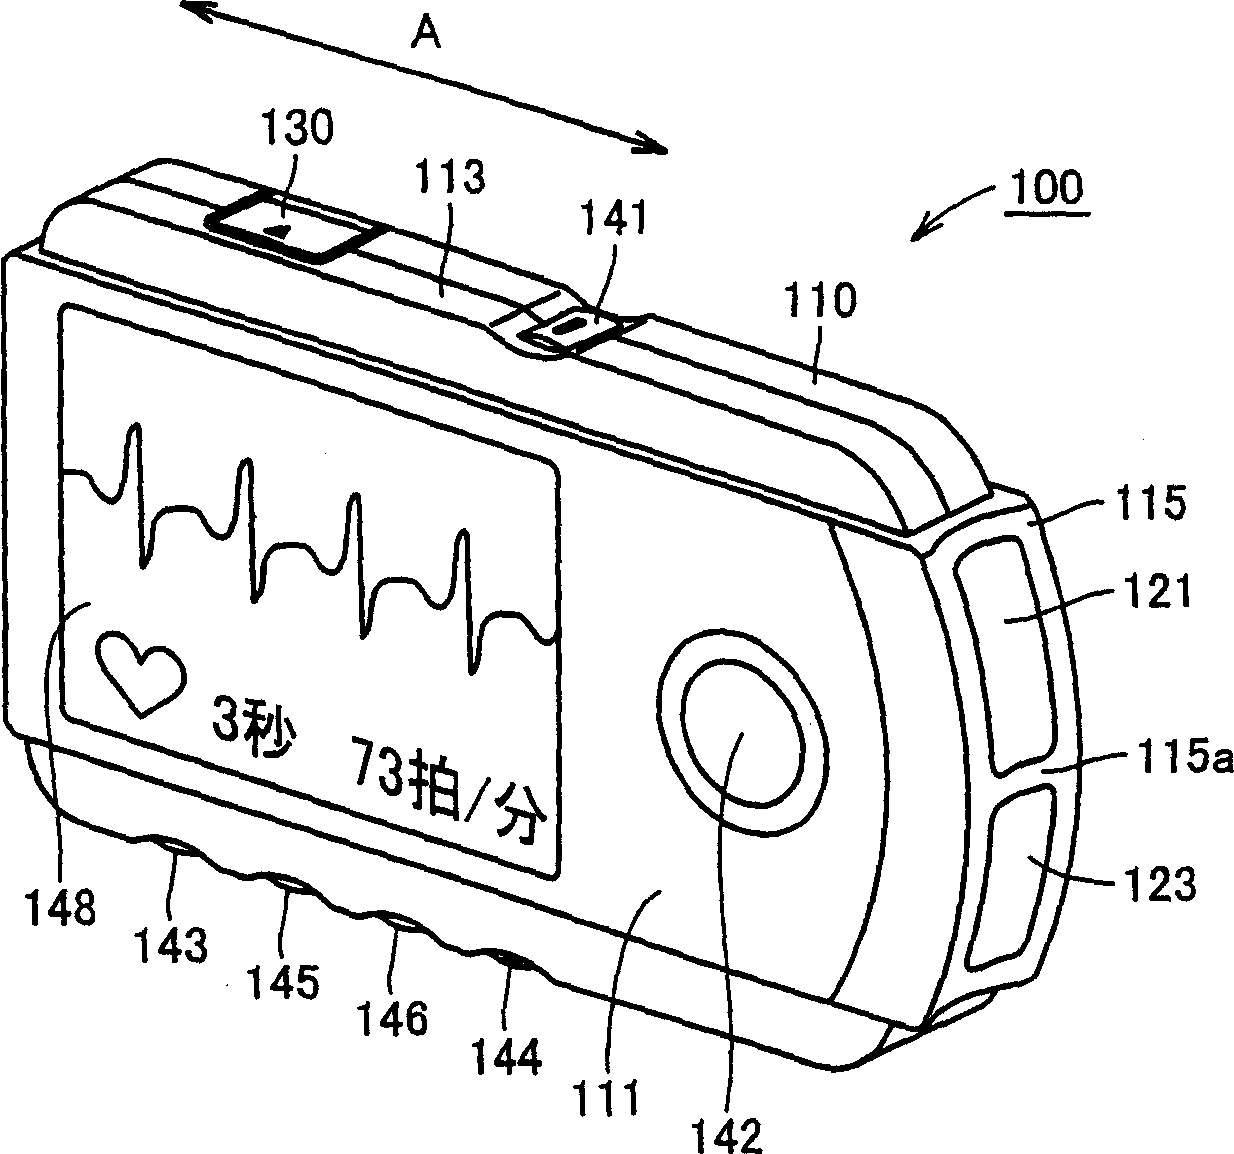 Portable electrocardiograph